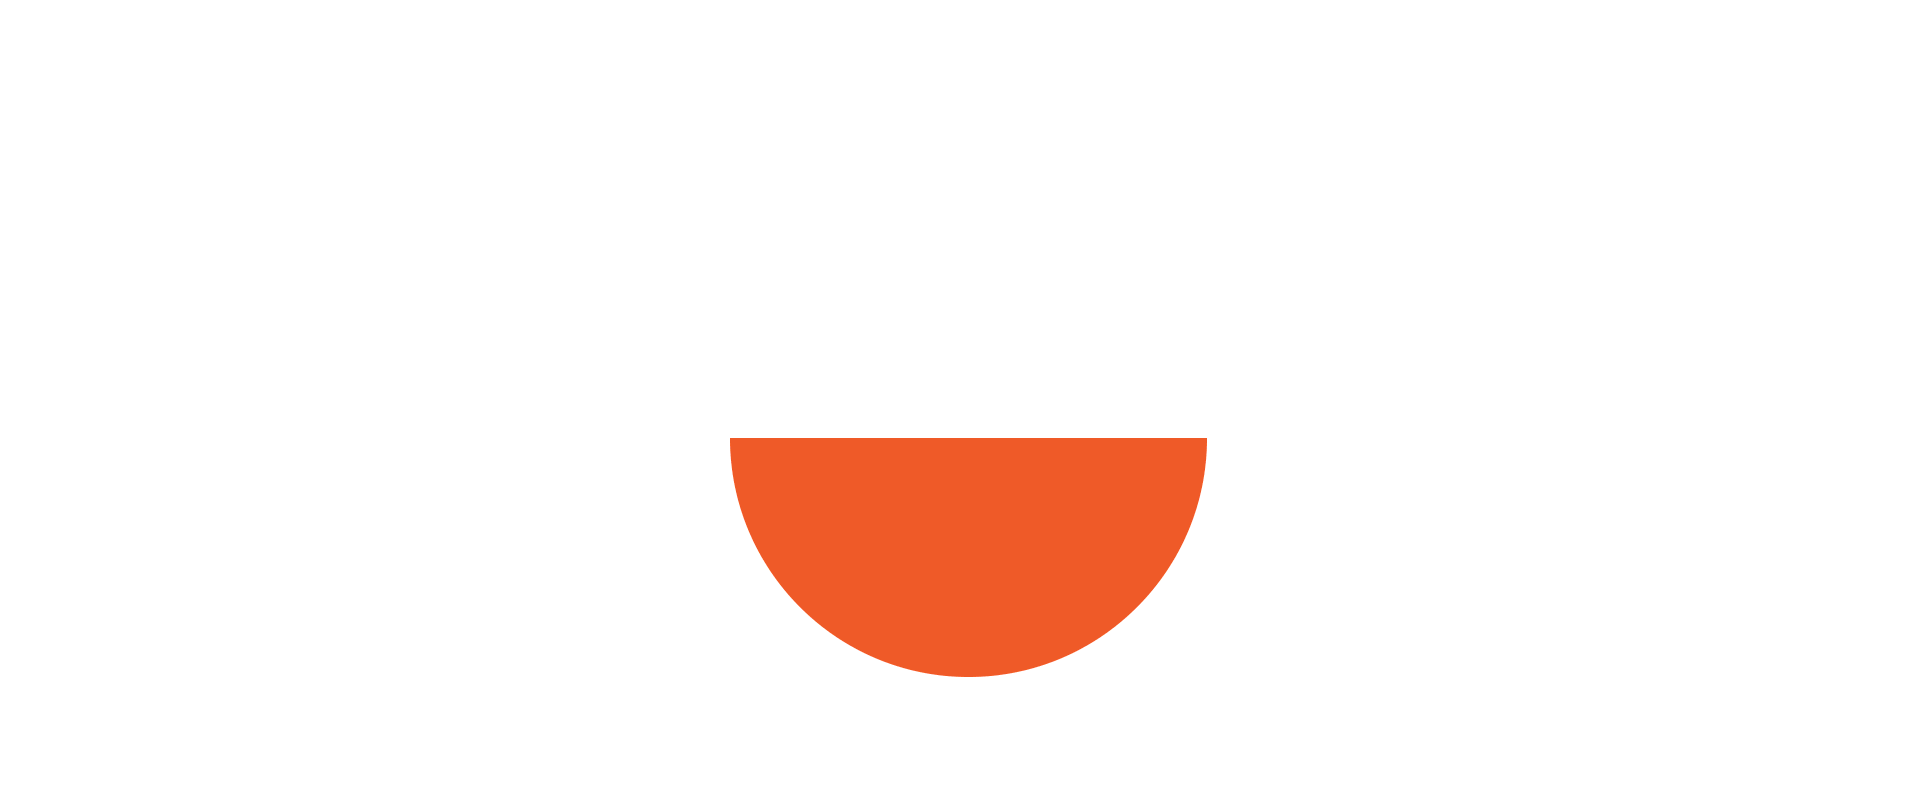 Створення логотипа та фірмового стилю для «yabudu»